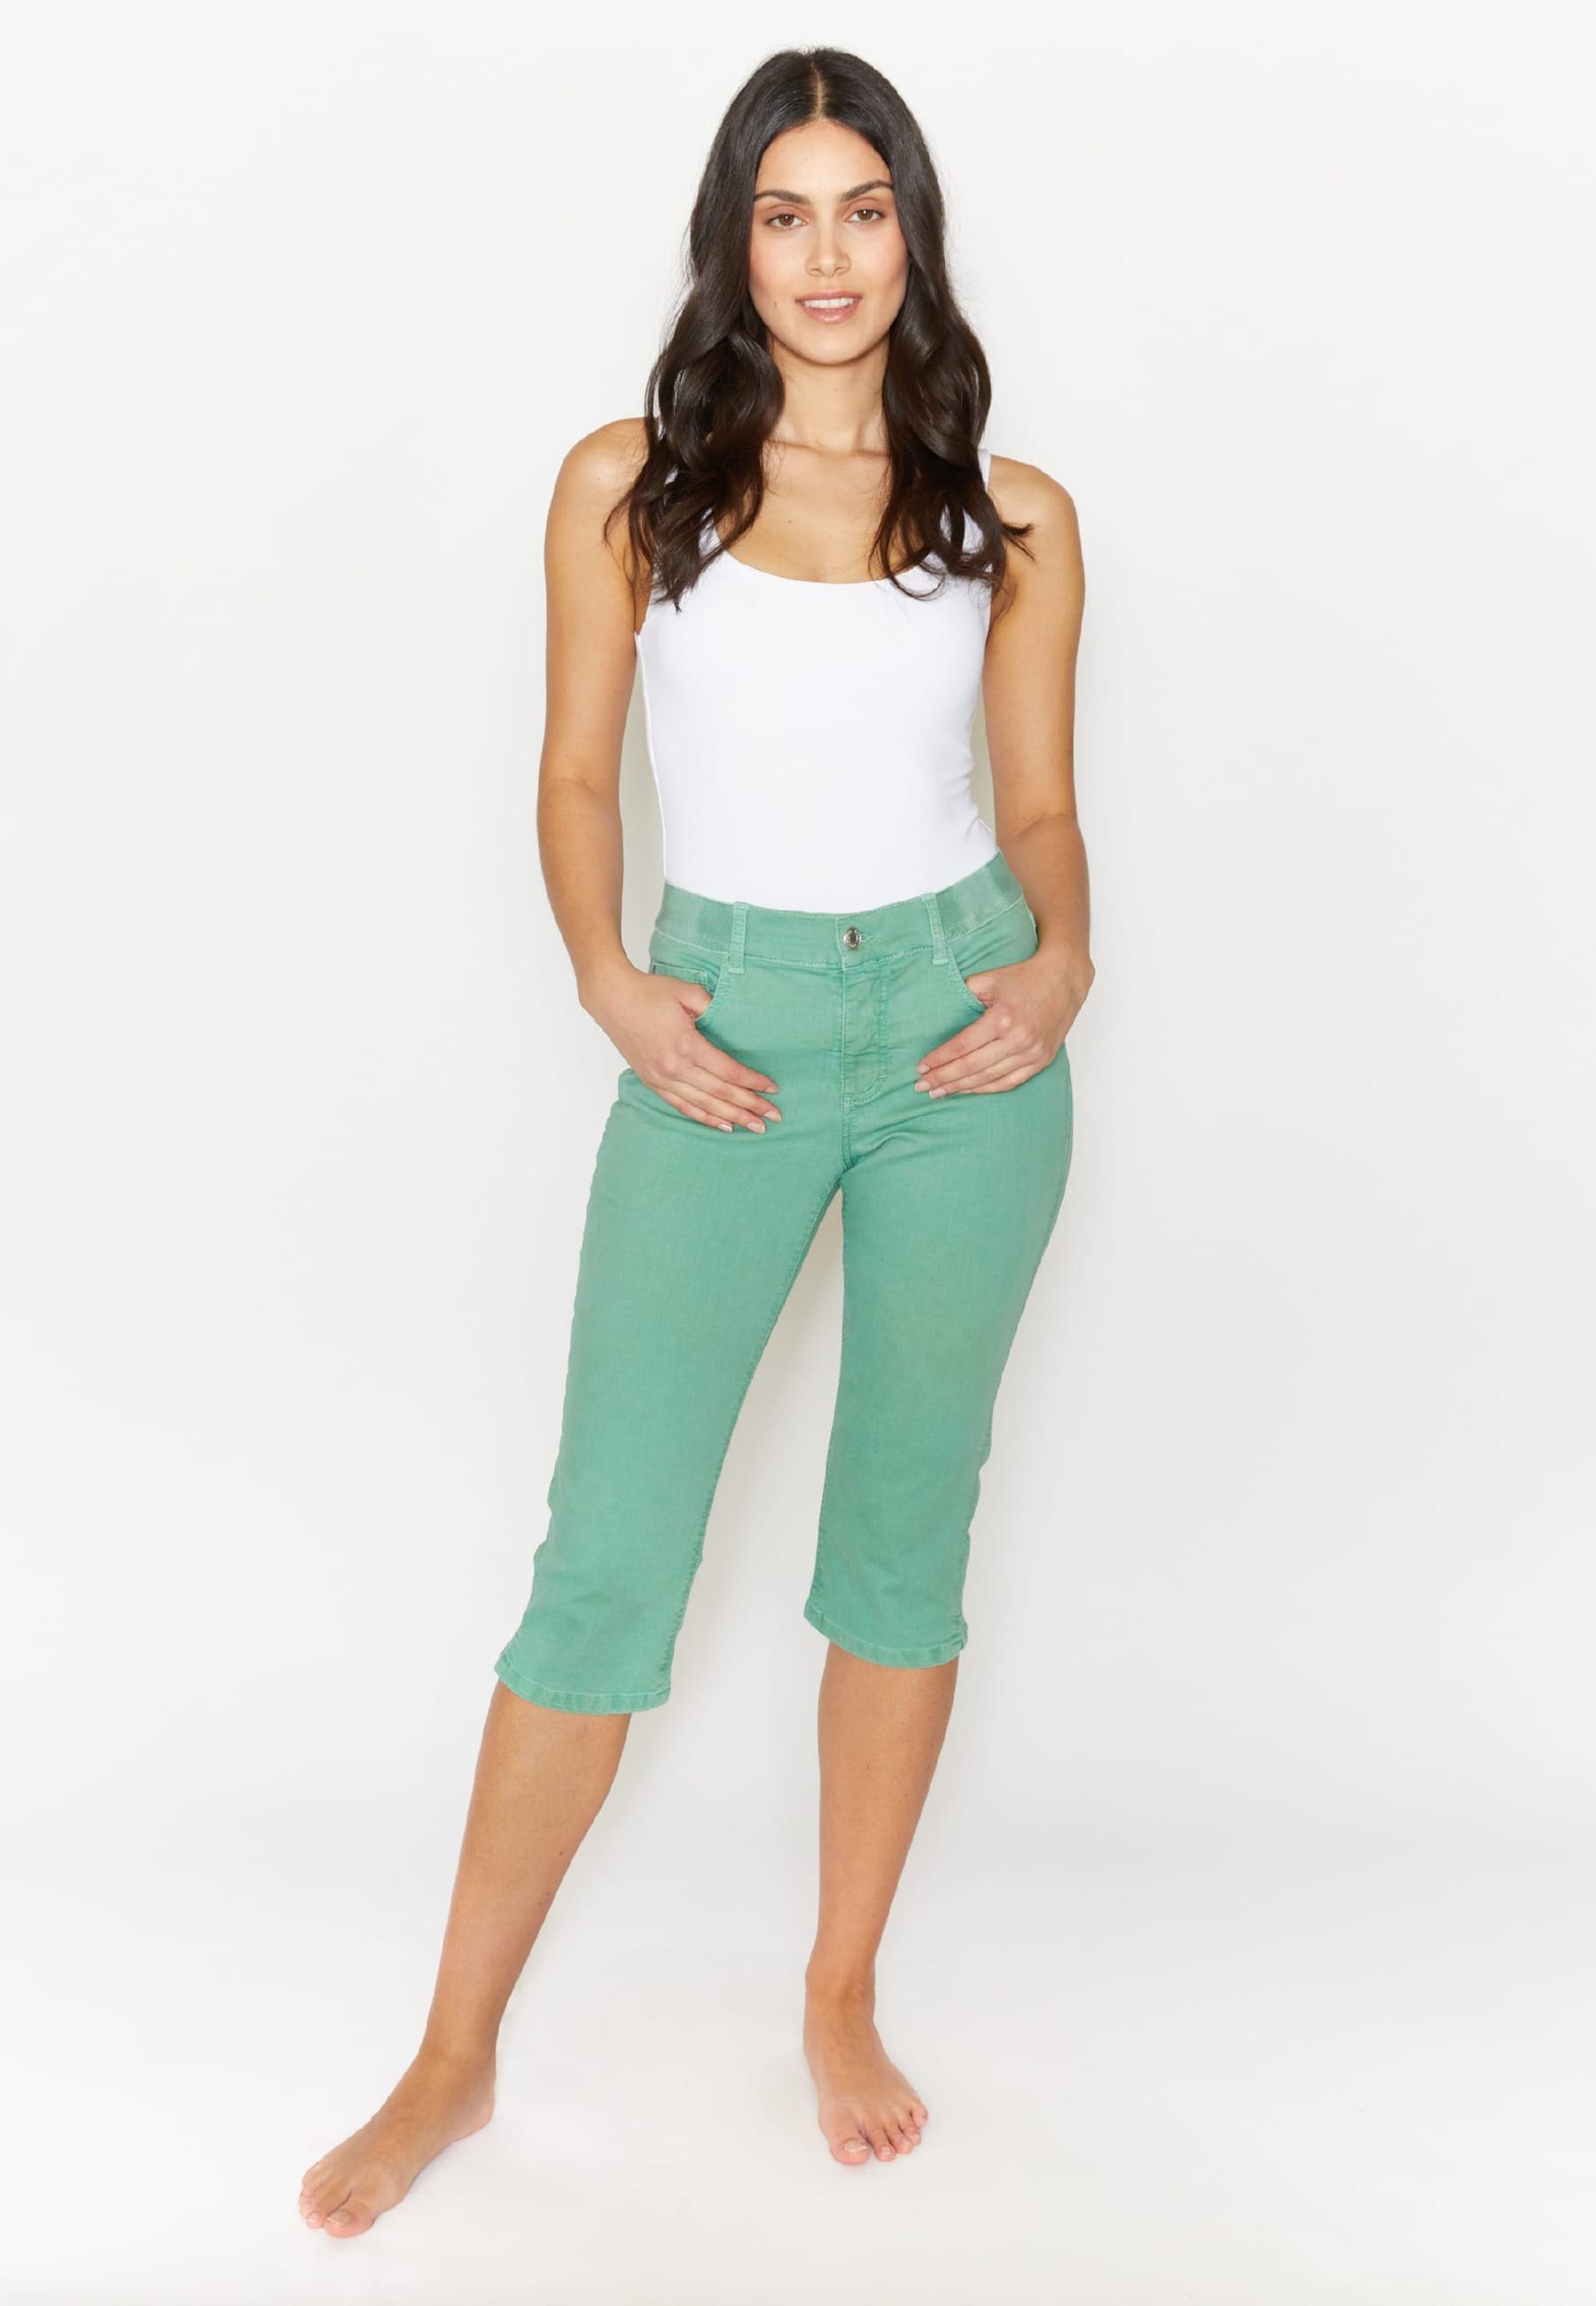 ANGELS Slim-fit-Jeans Jeans Denim Capri Coloured mit OSFA Label-Applikationen grün mit